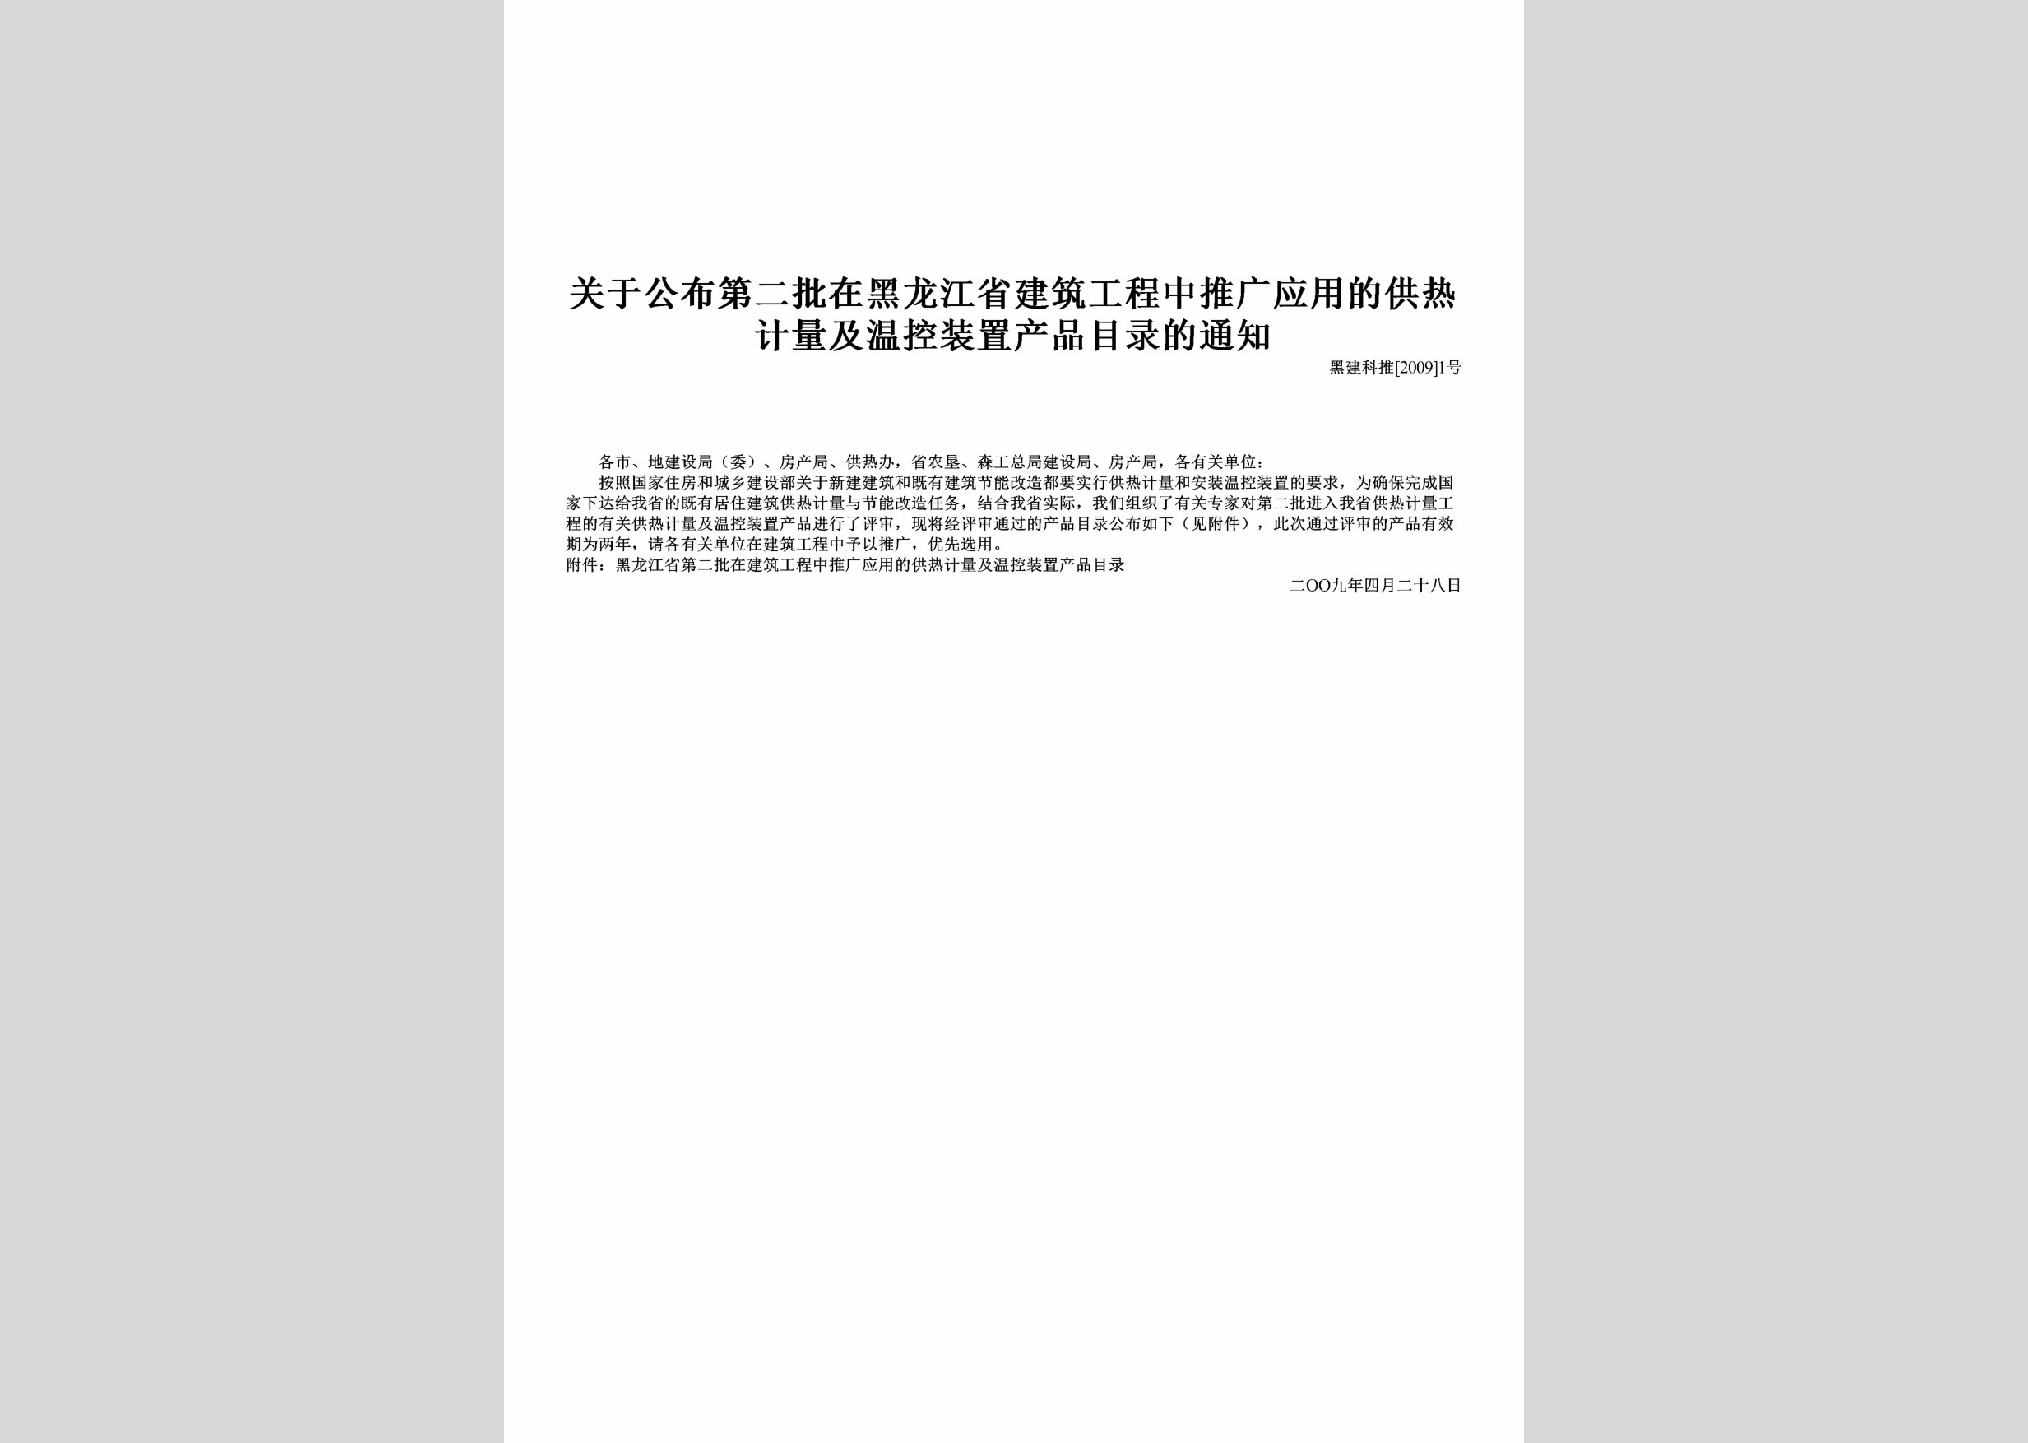 黑建科推[2009]1号：关于公布第二批在黑龙江省建筑工程中推广应用的供热计量及温控装置产品目录的通知